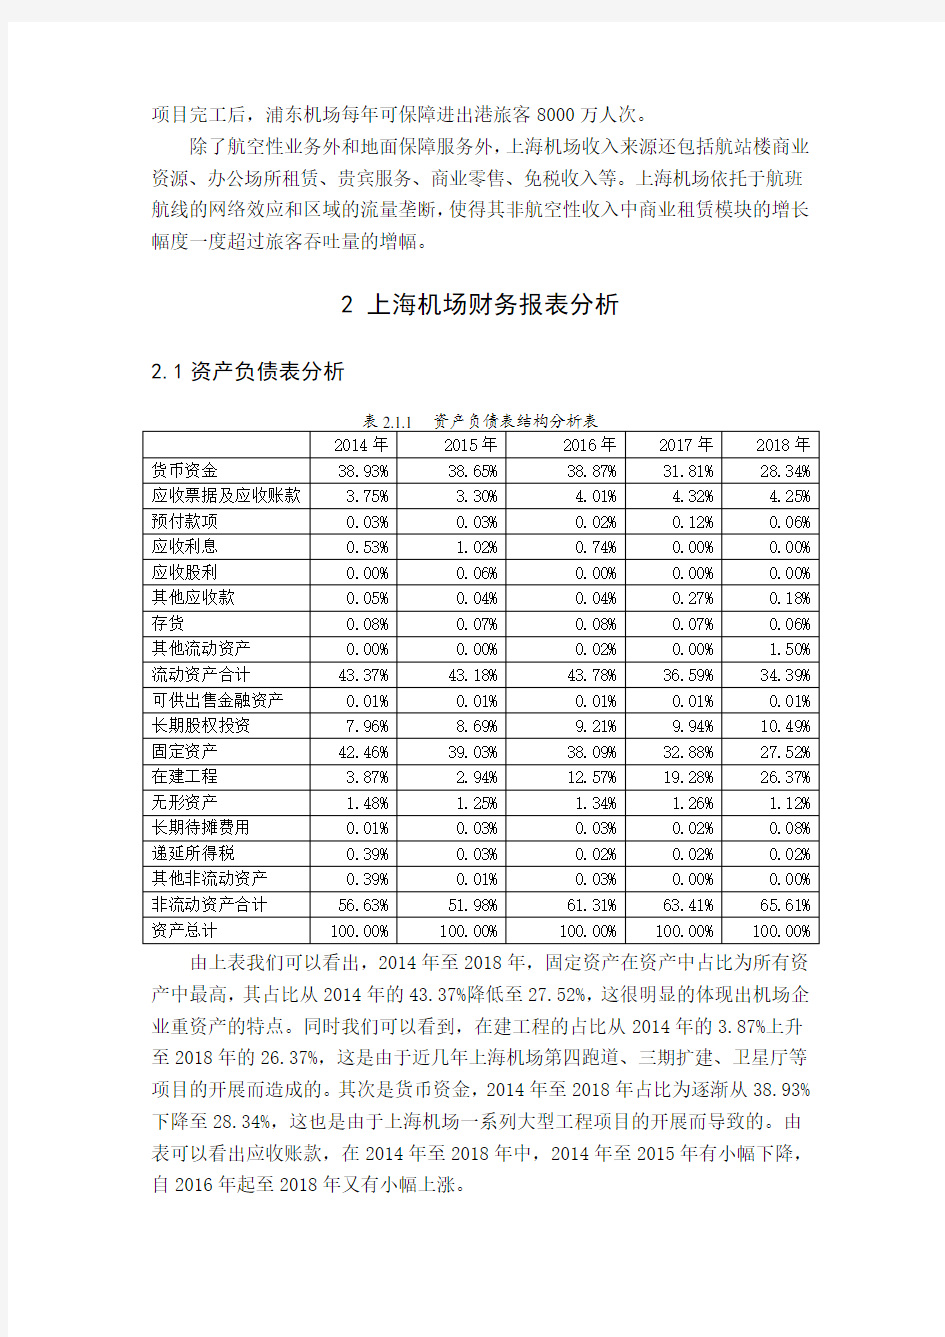 上海机场财务报表分析